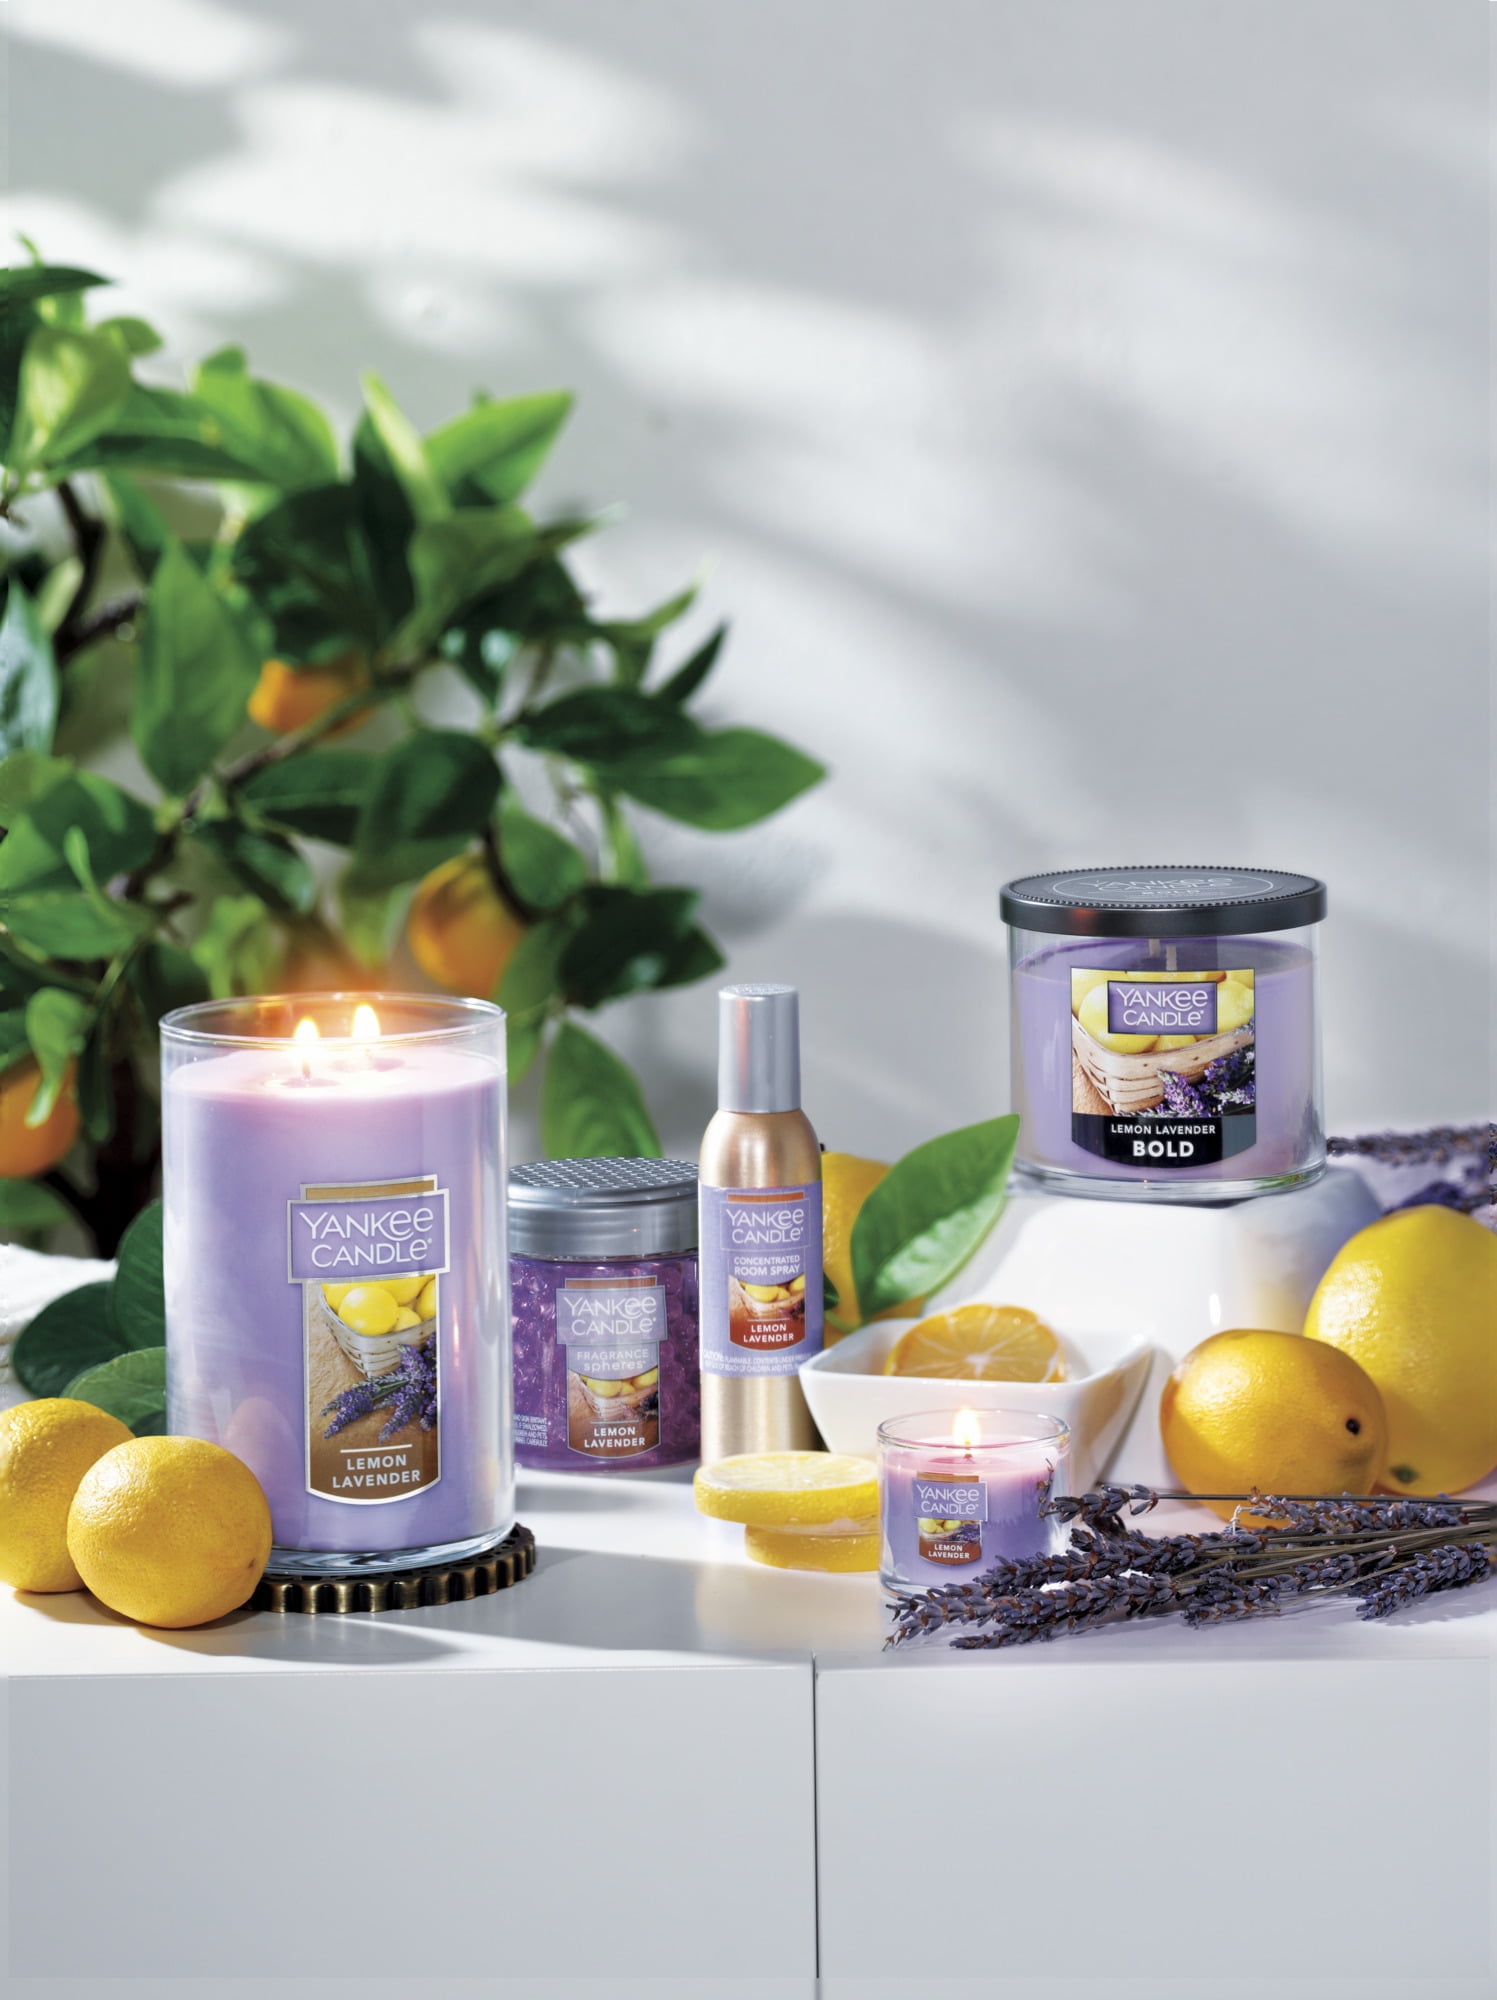 Candela Yankee candle lemon lavander 411gr viola in cera stile